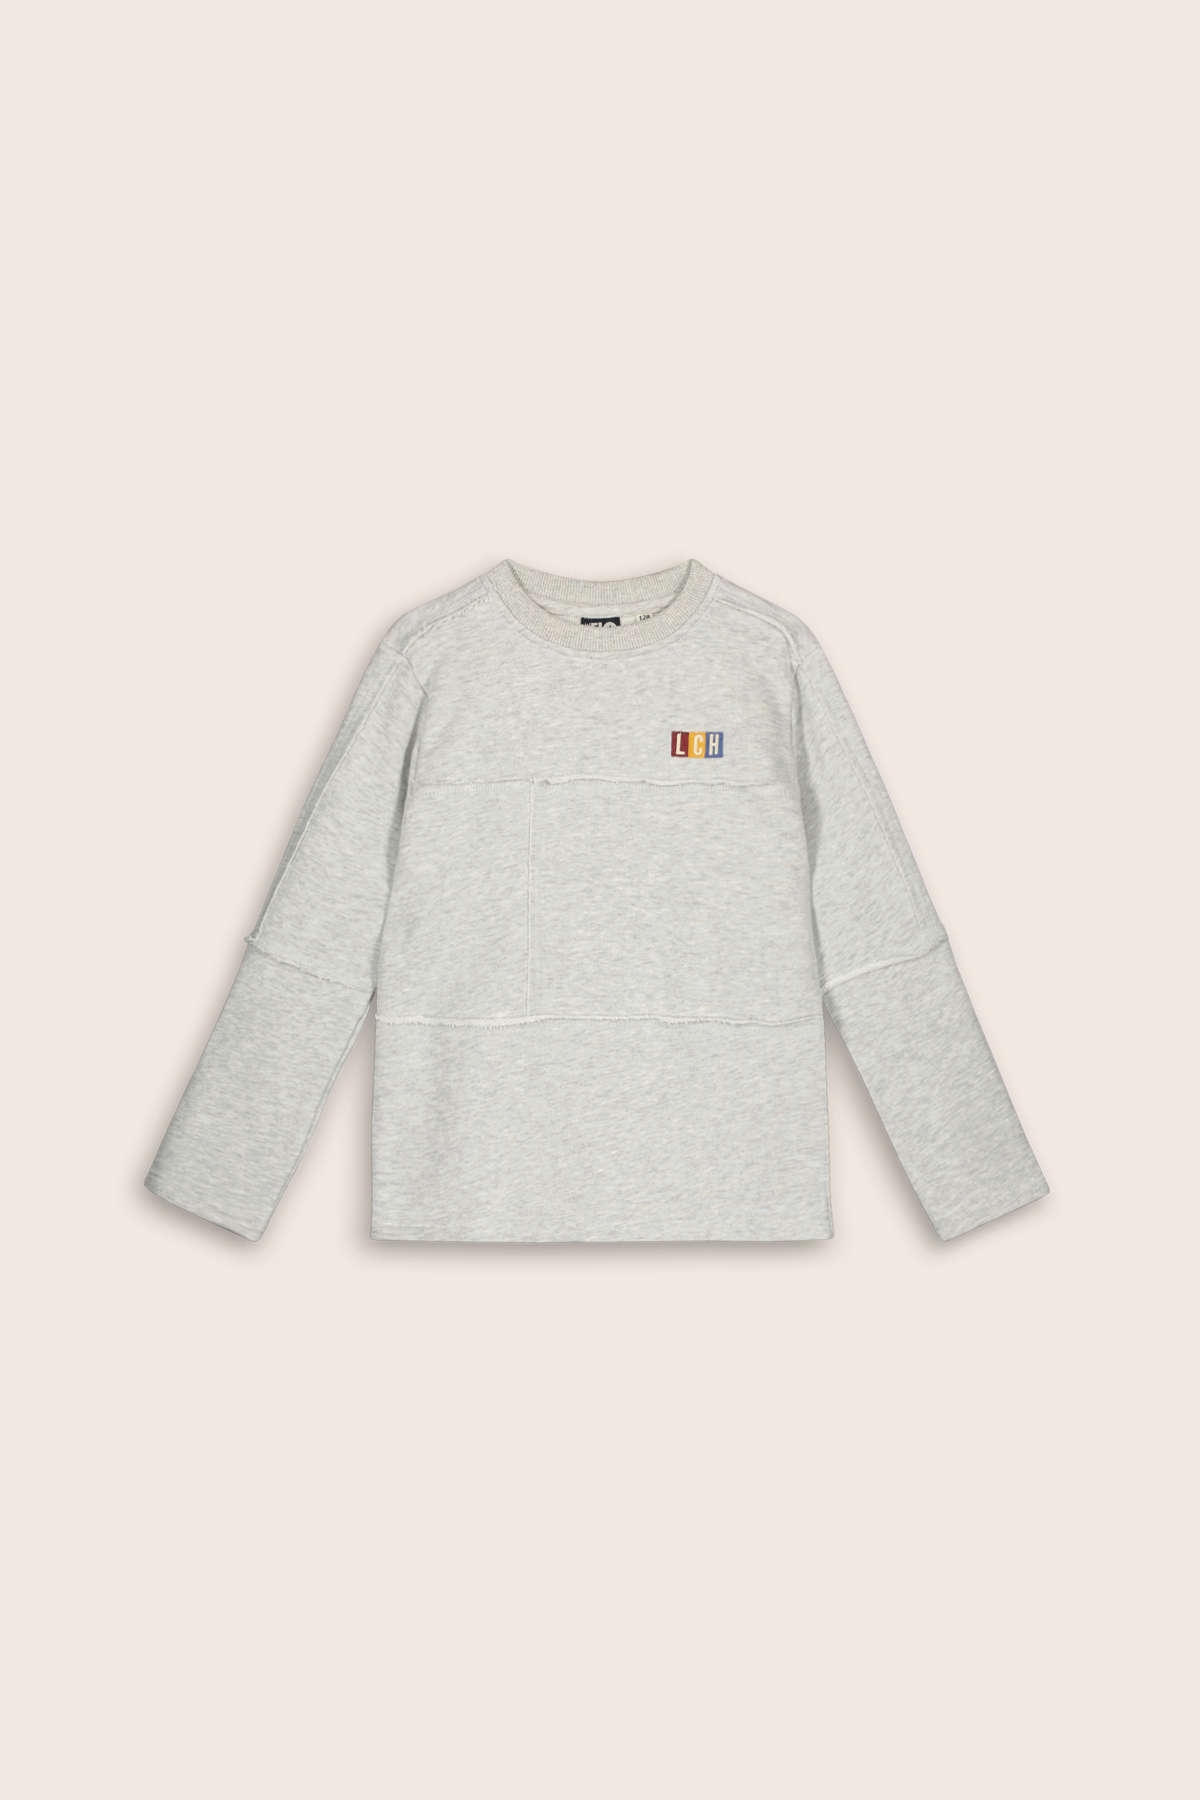 Trui / Sweater Sweater RAW heather grey